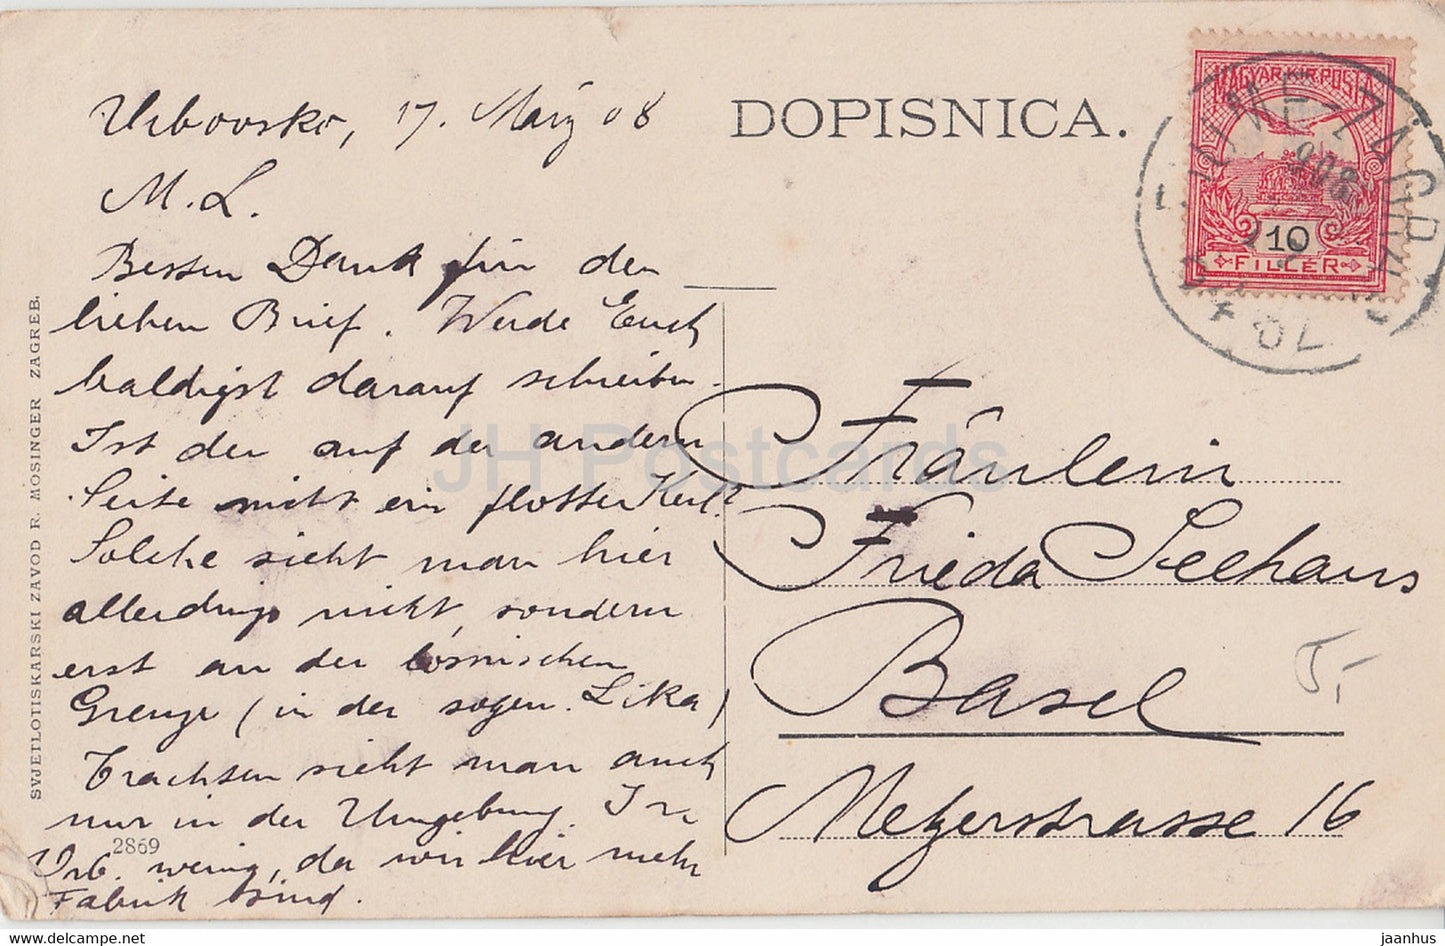 Junak sam iz Like - Mann aus Lika - Volkstrachten - alte Postkarte - 1908 - Kroatien - gebraucht